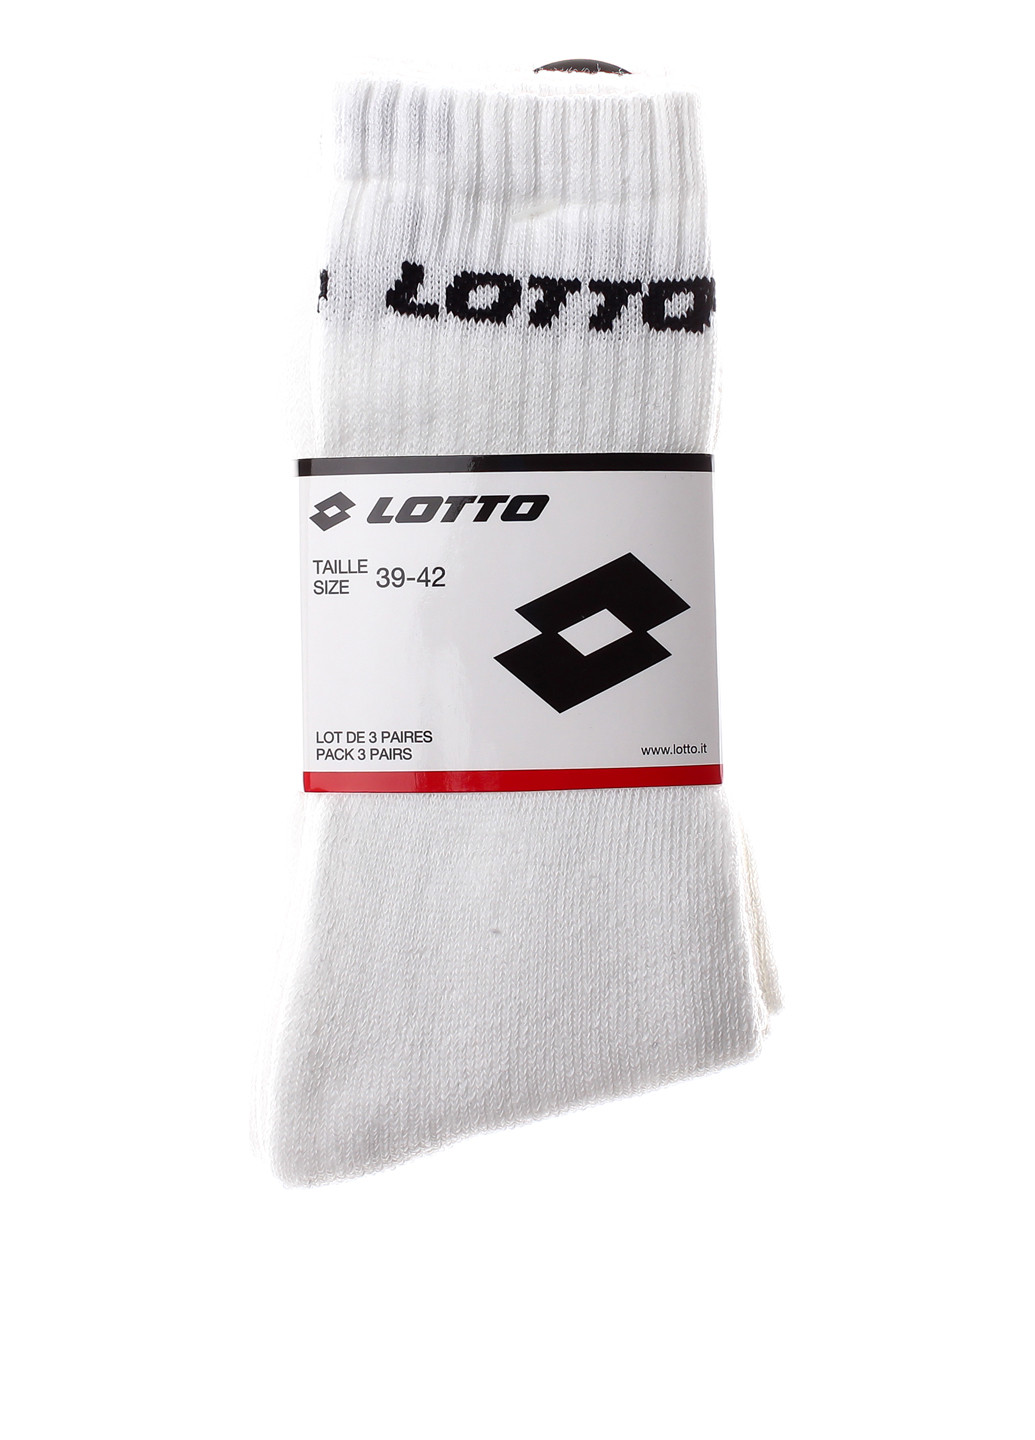 Носки (3 пары) Lotto с уплотненным носком логотипы белые спортивные